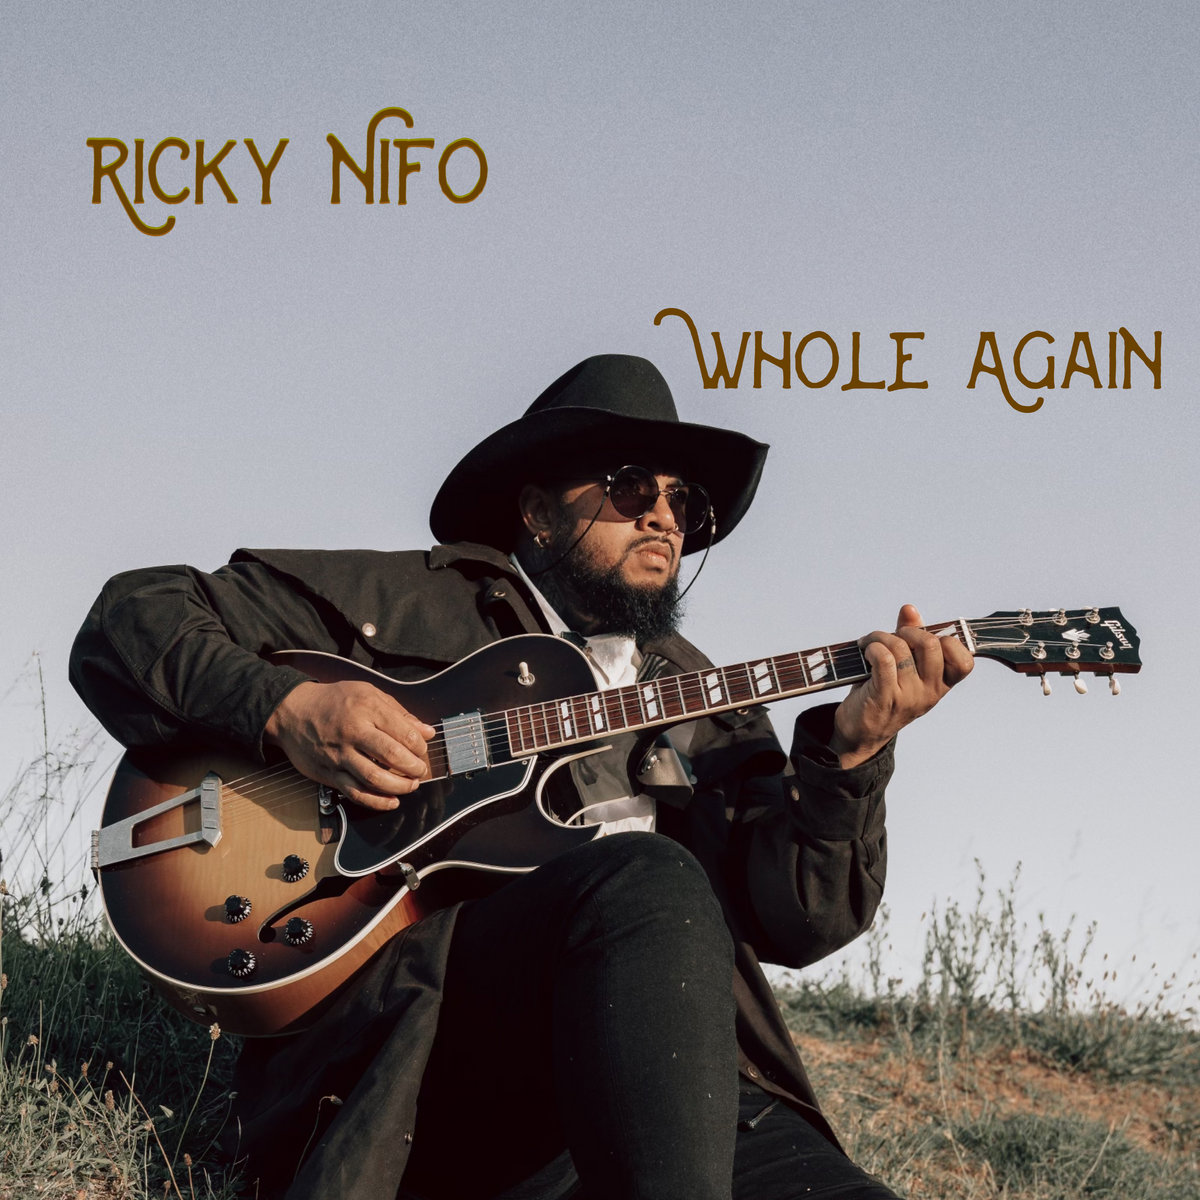 LISTEN: “Whole Again” by Ricky Nifo